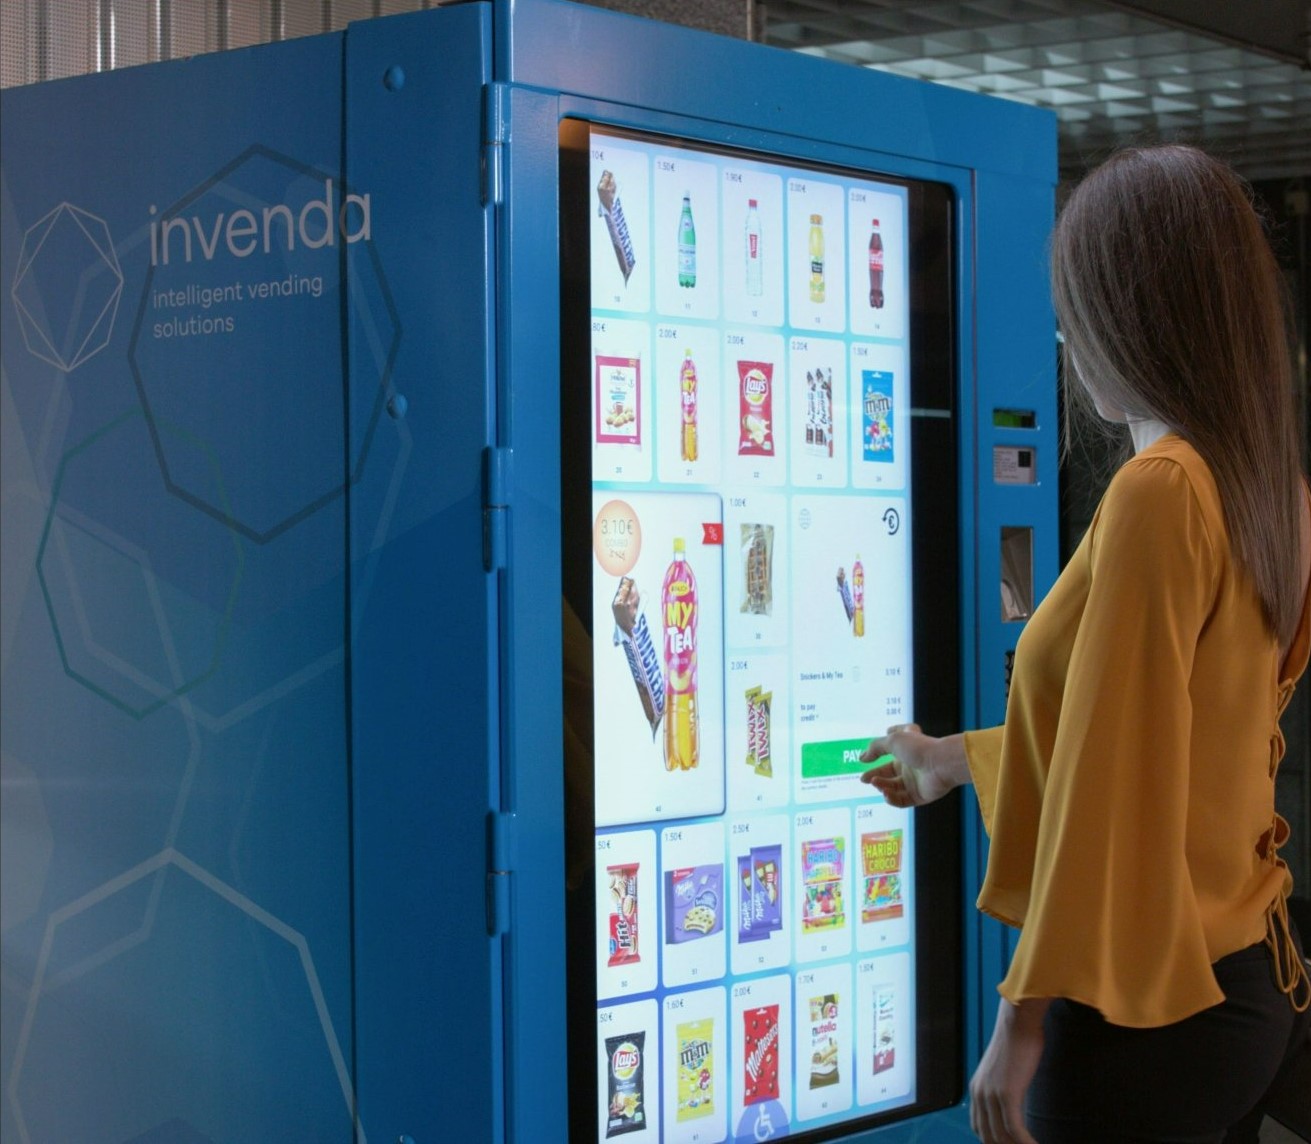 Mit intelligenten Automaten von Invenda baut Valora derzeit in der Schweiz ein eigenes Vending-Geschäft auf. Foto: Invenda